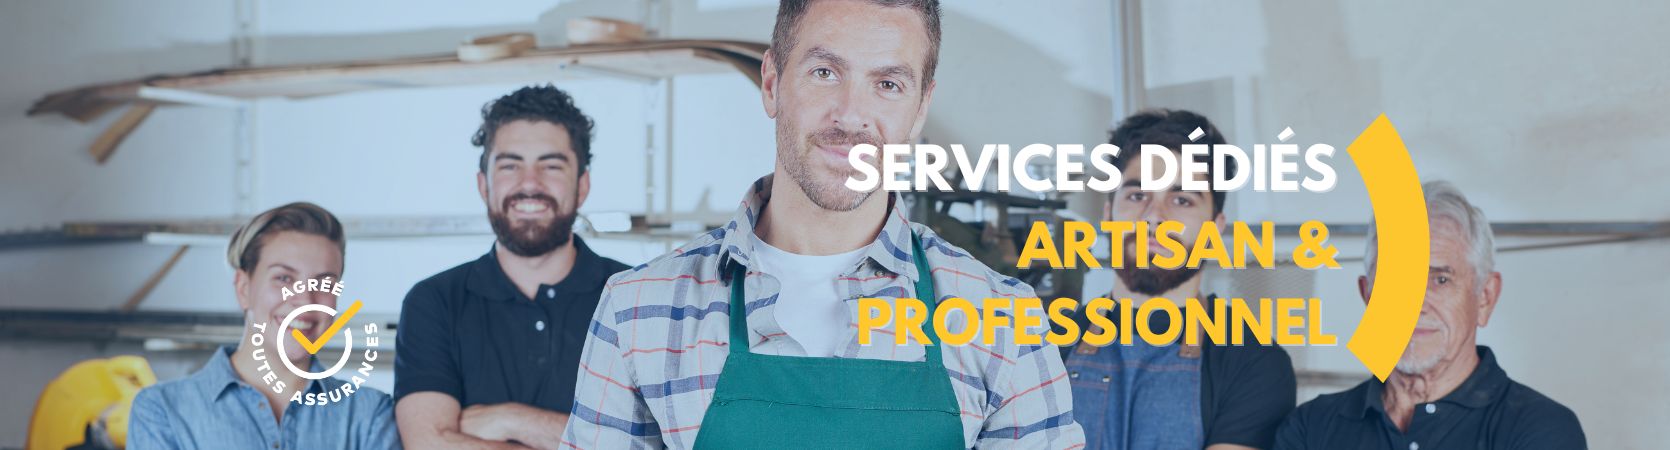 Services dédiés artisans et professionnels